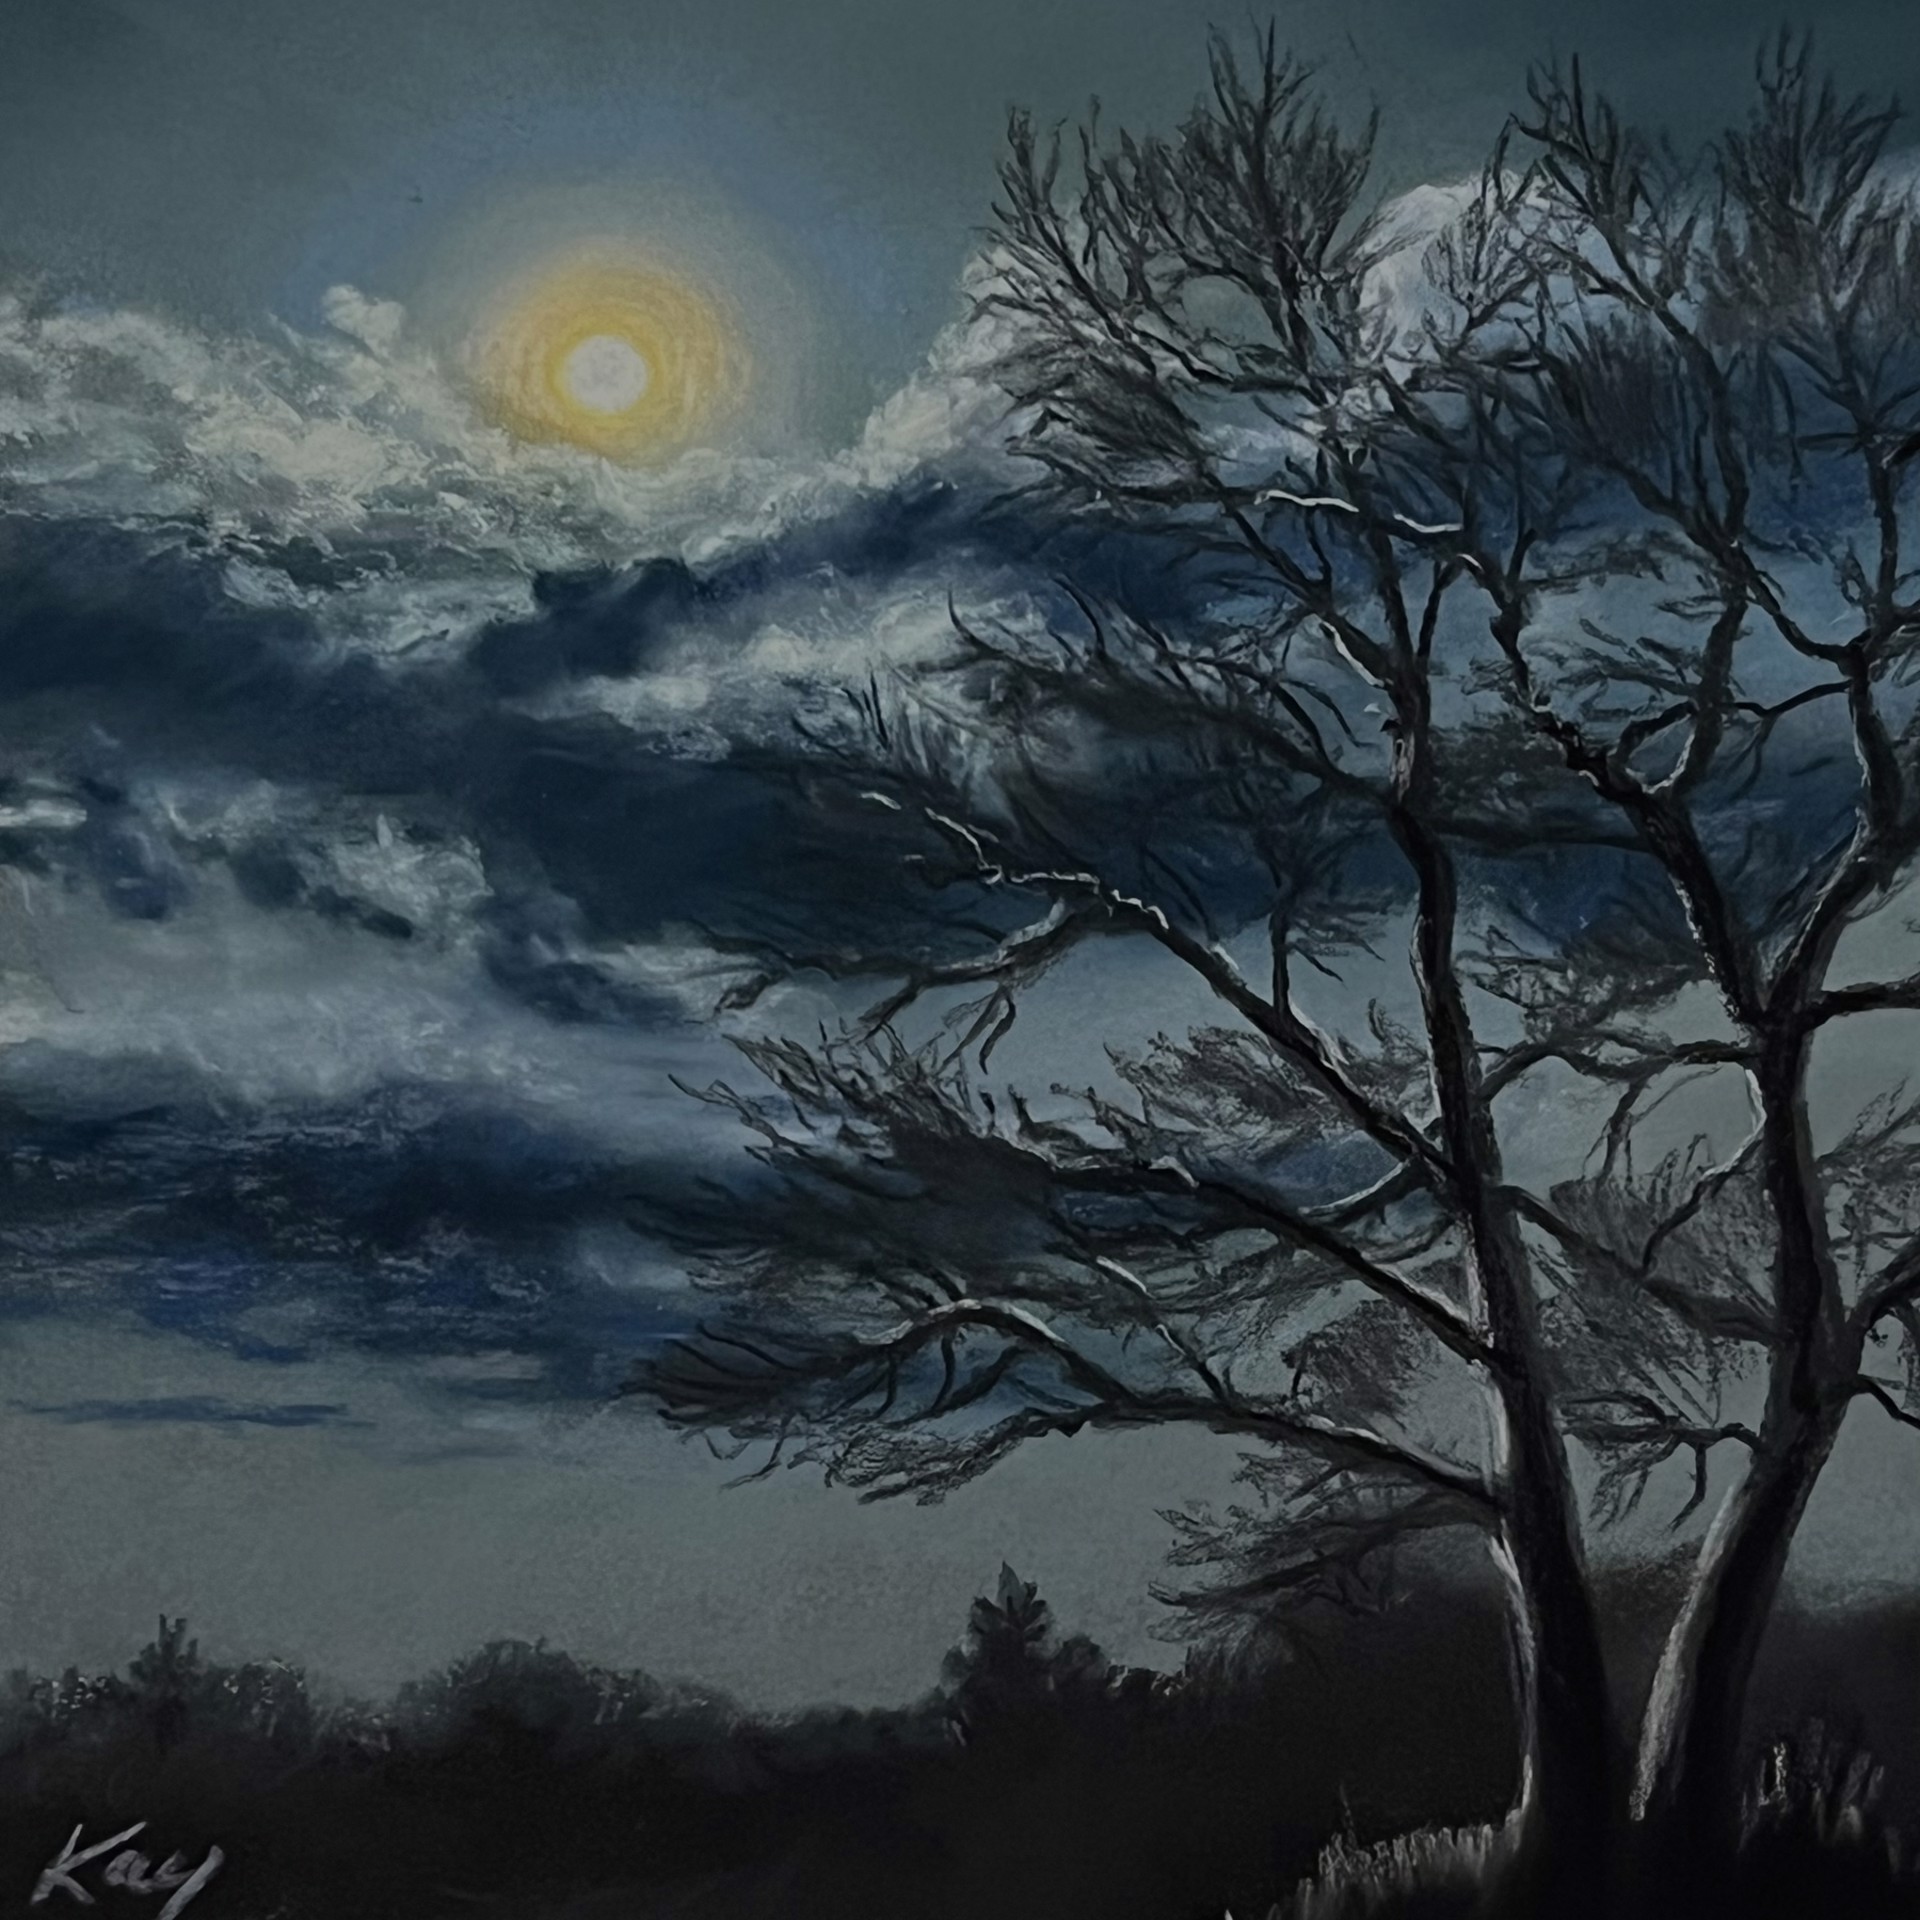 November Moon by Kay Brathol-Hostvet